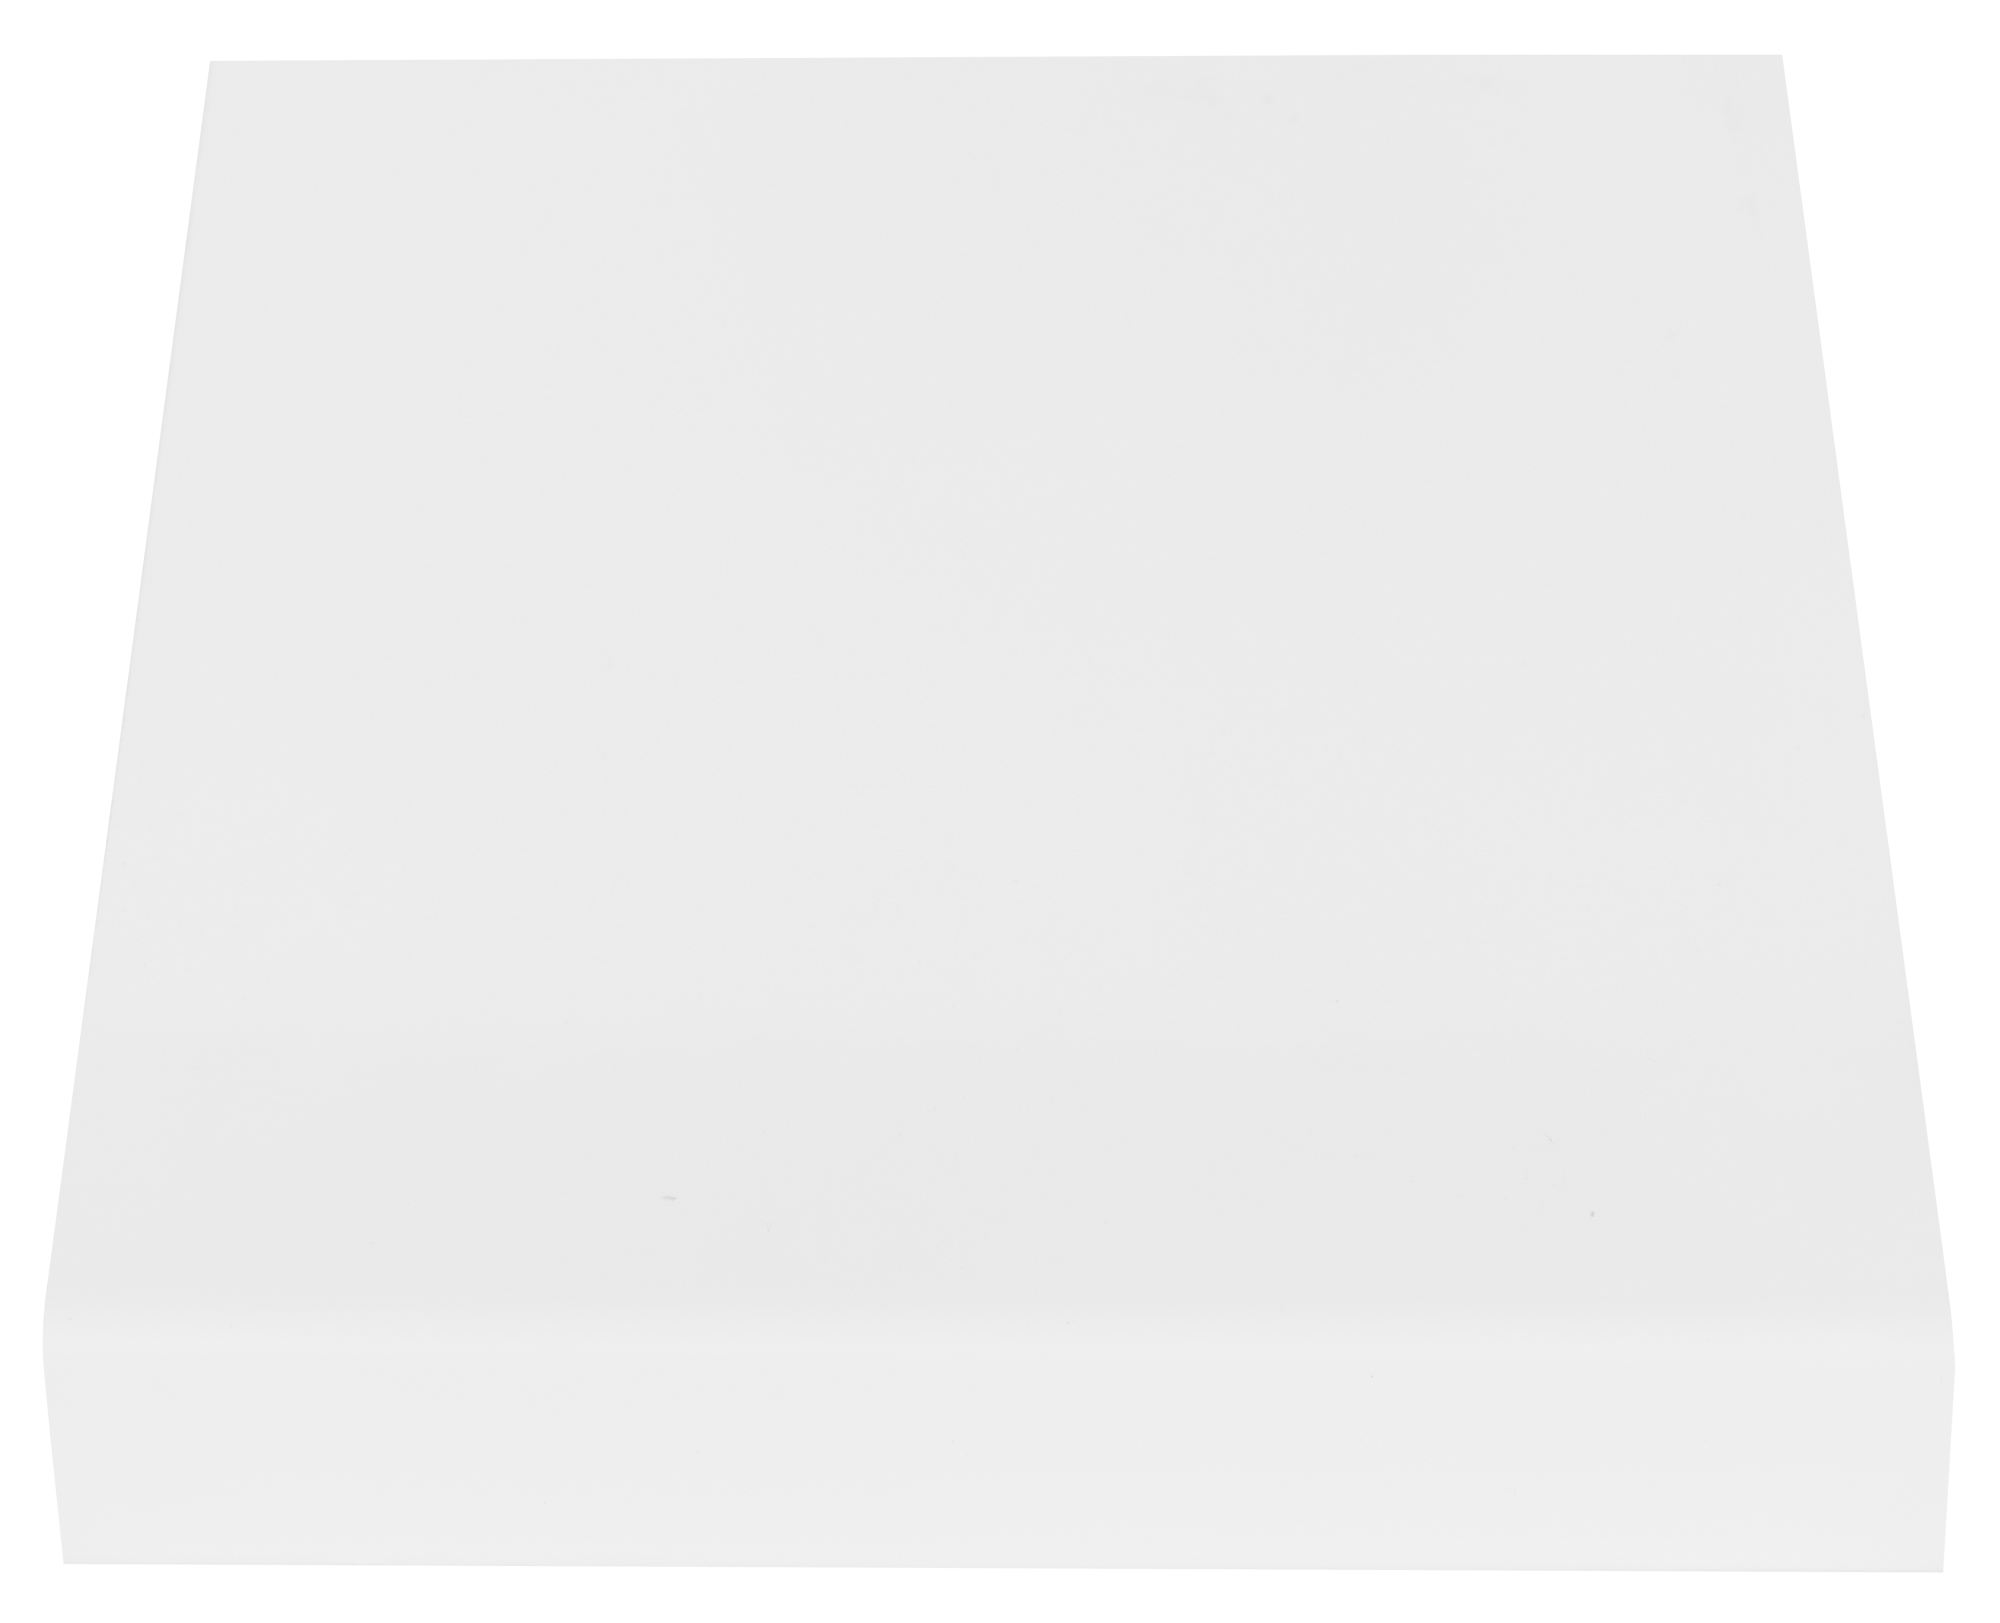 Encimera de cocina laminada blanco mate 240x63 cm espesor 30mm